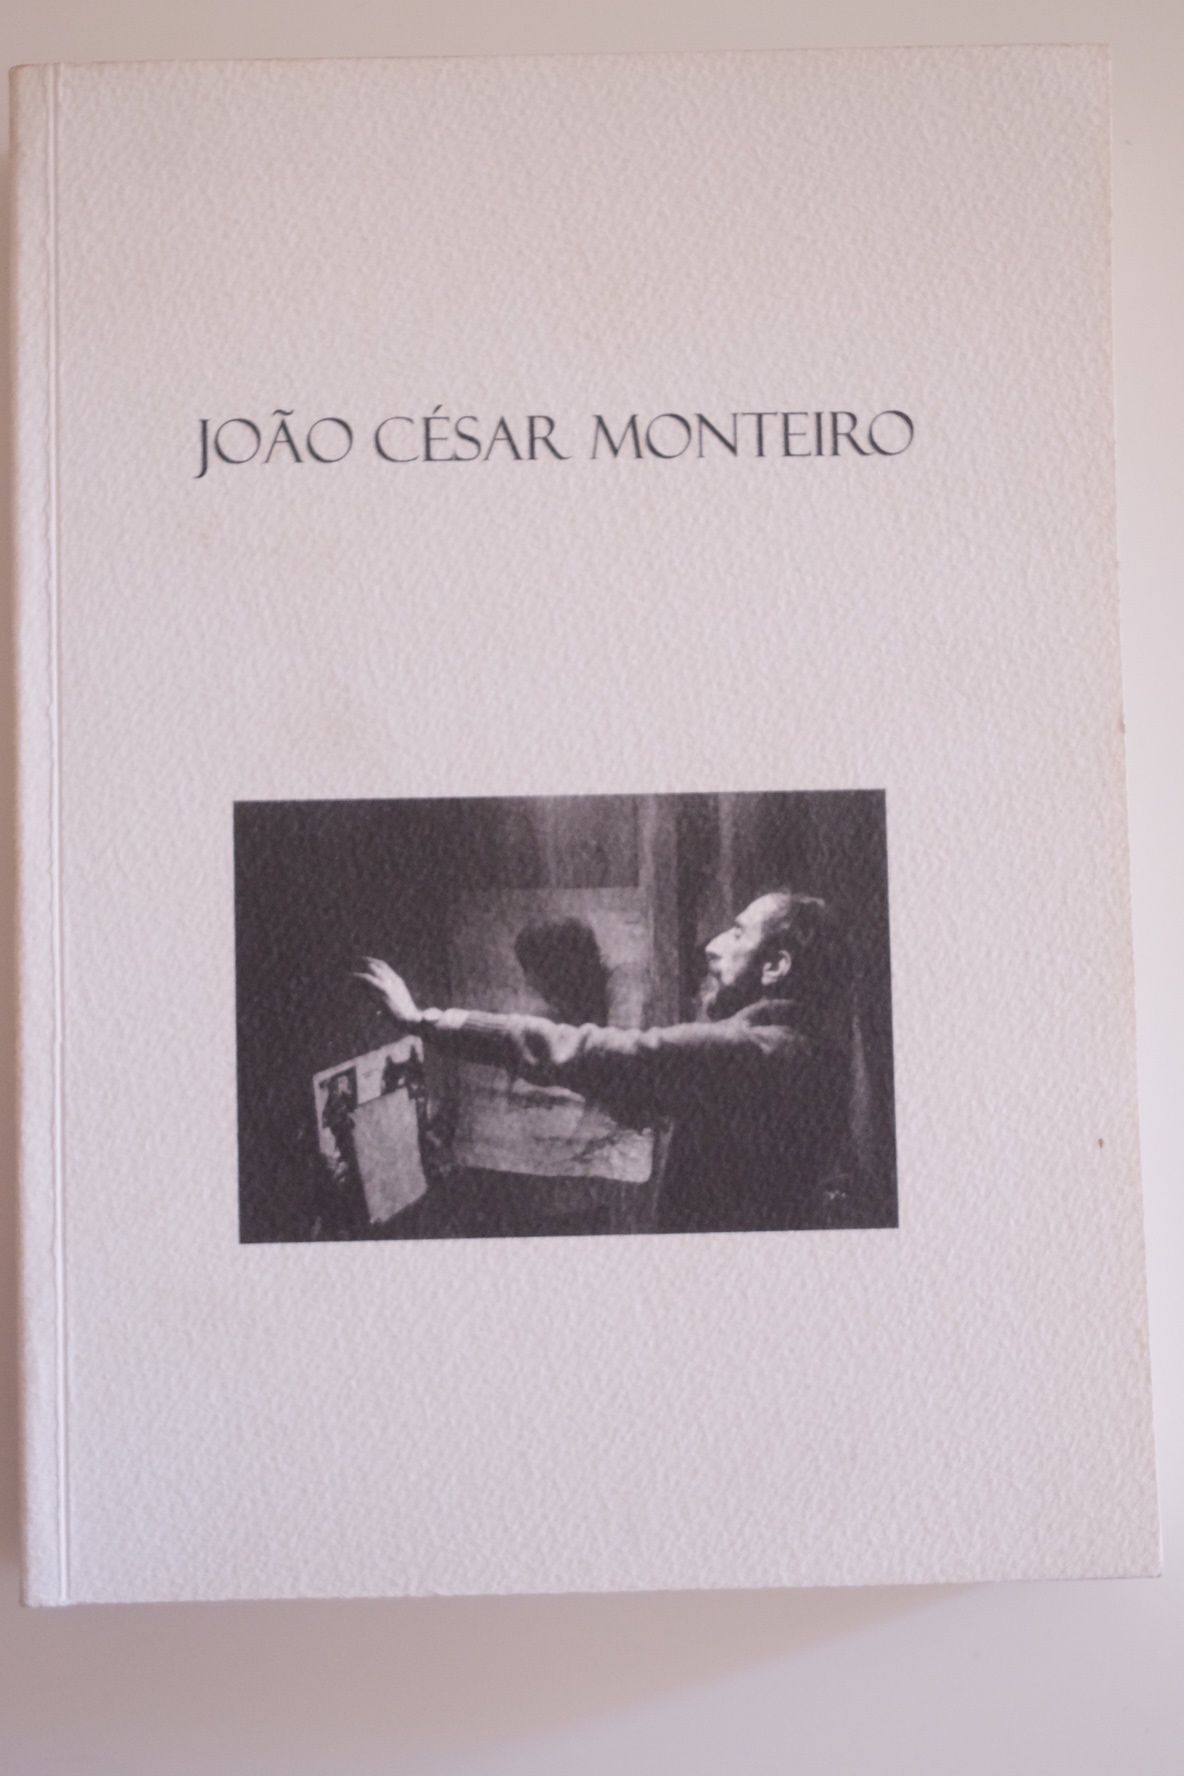 João Cesar Monteiro